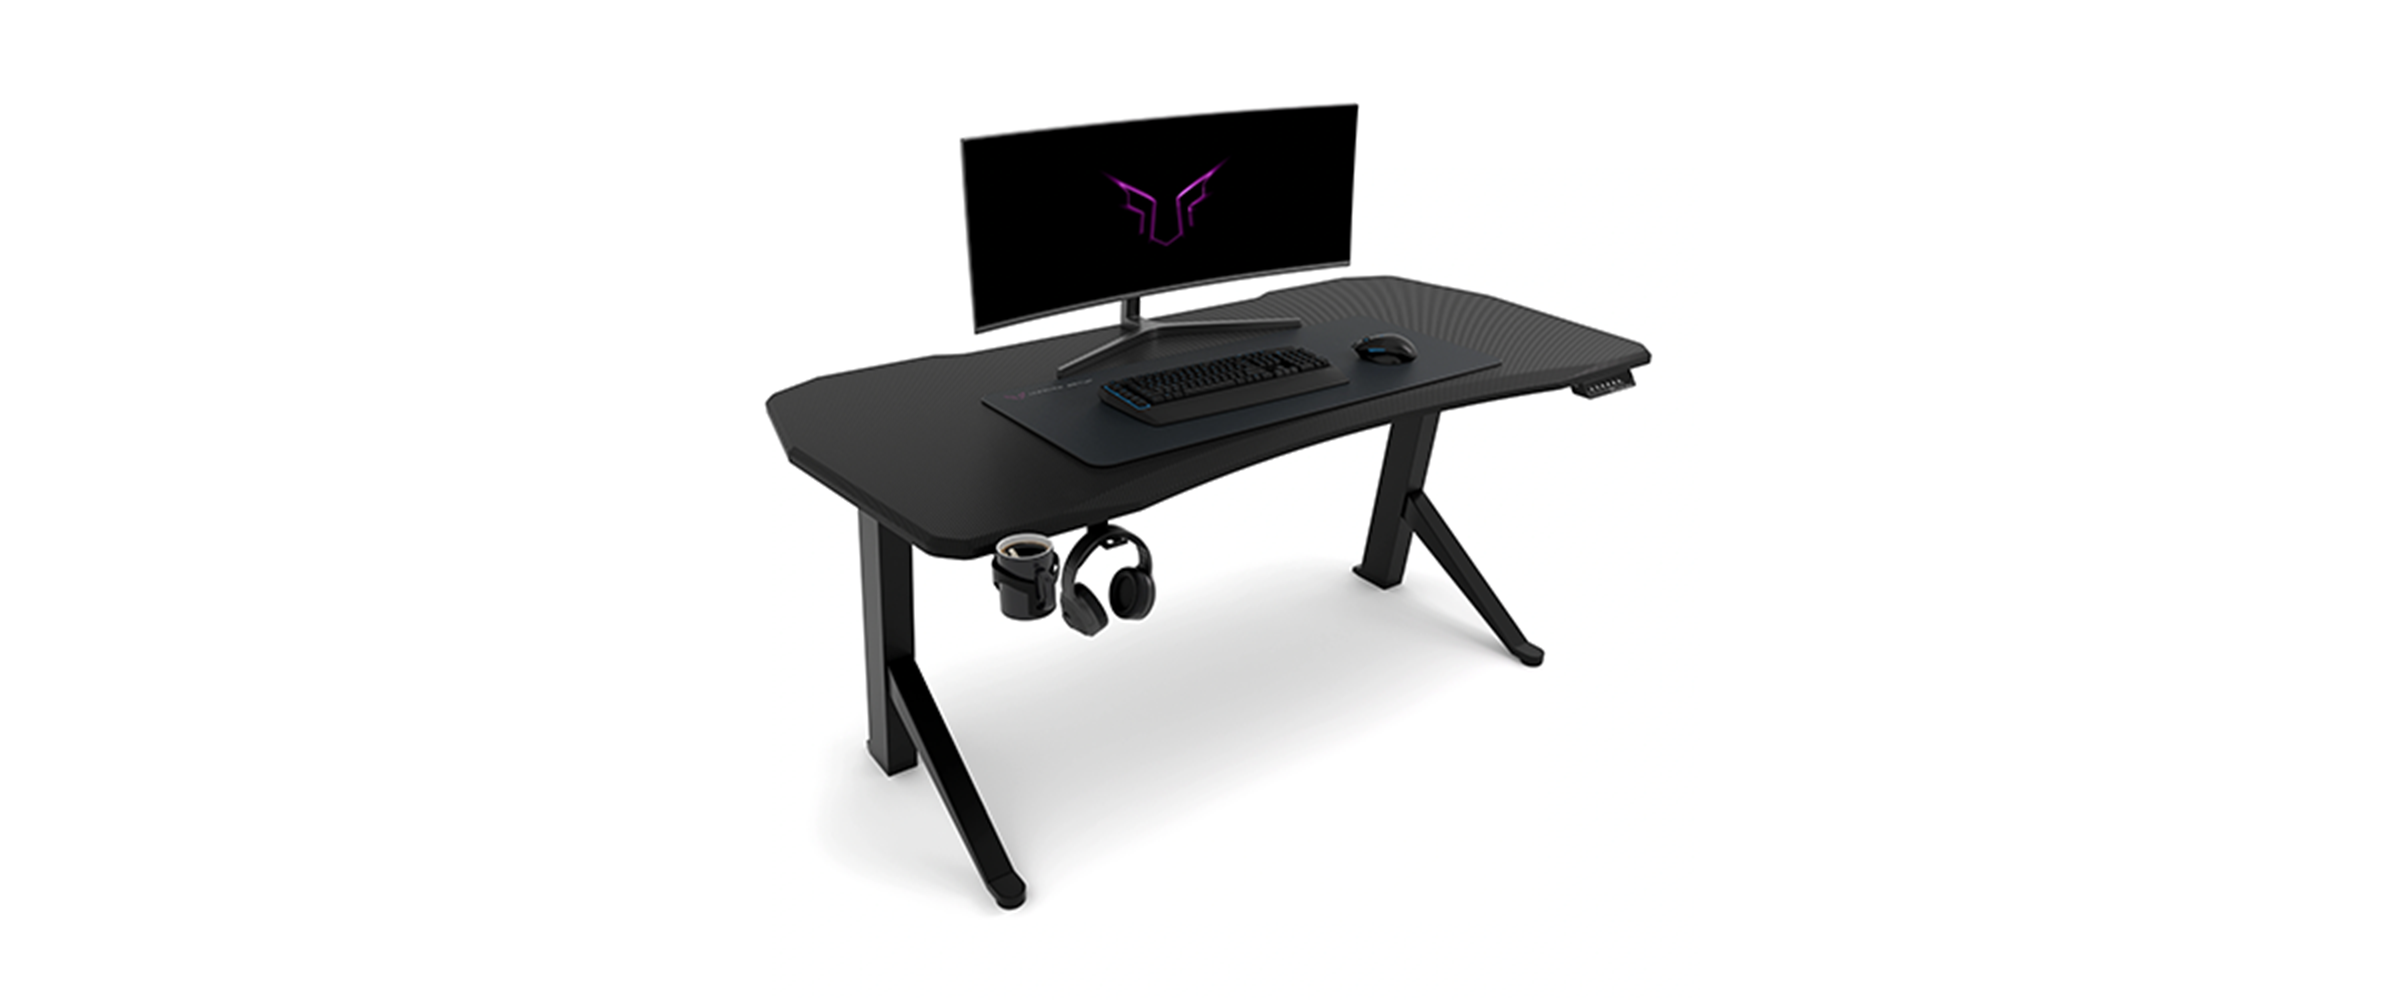 Ein schwarzer Gaming-Tisch von Ultimate Setup vor weißem Hintergrund. Auf dem Tisch ist ein Curved-Monitor zu sehen sowie Mauspad, Tastatur und Maus.